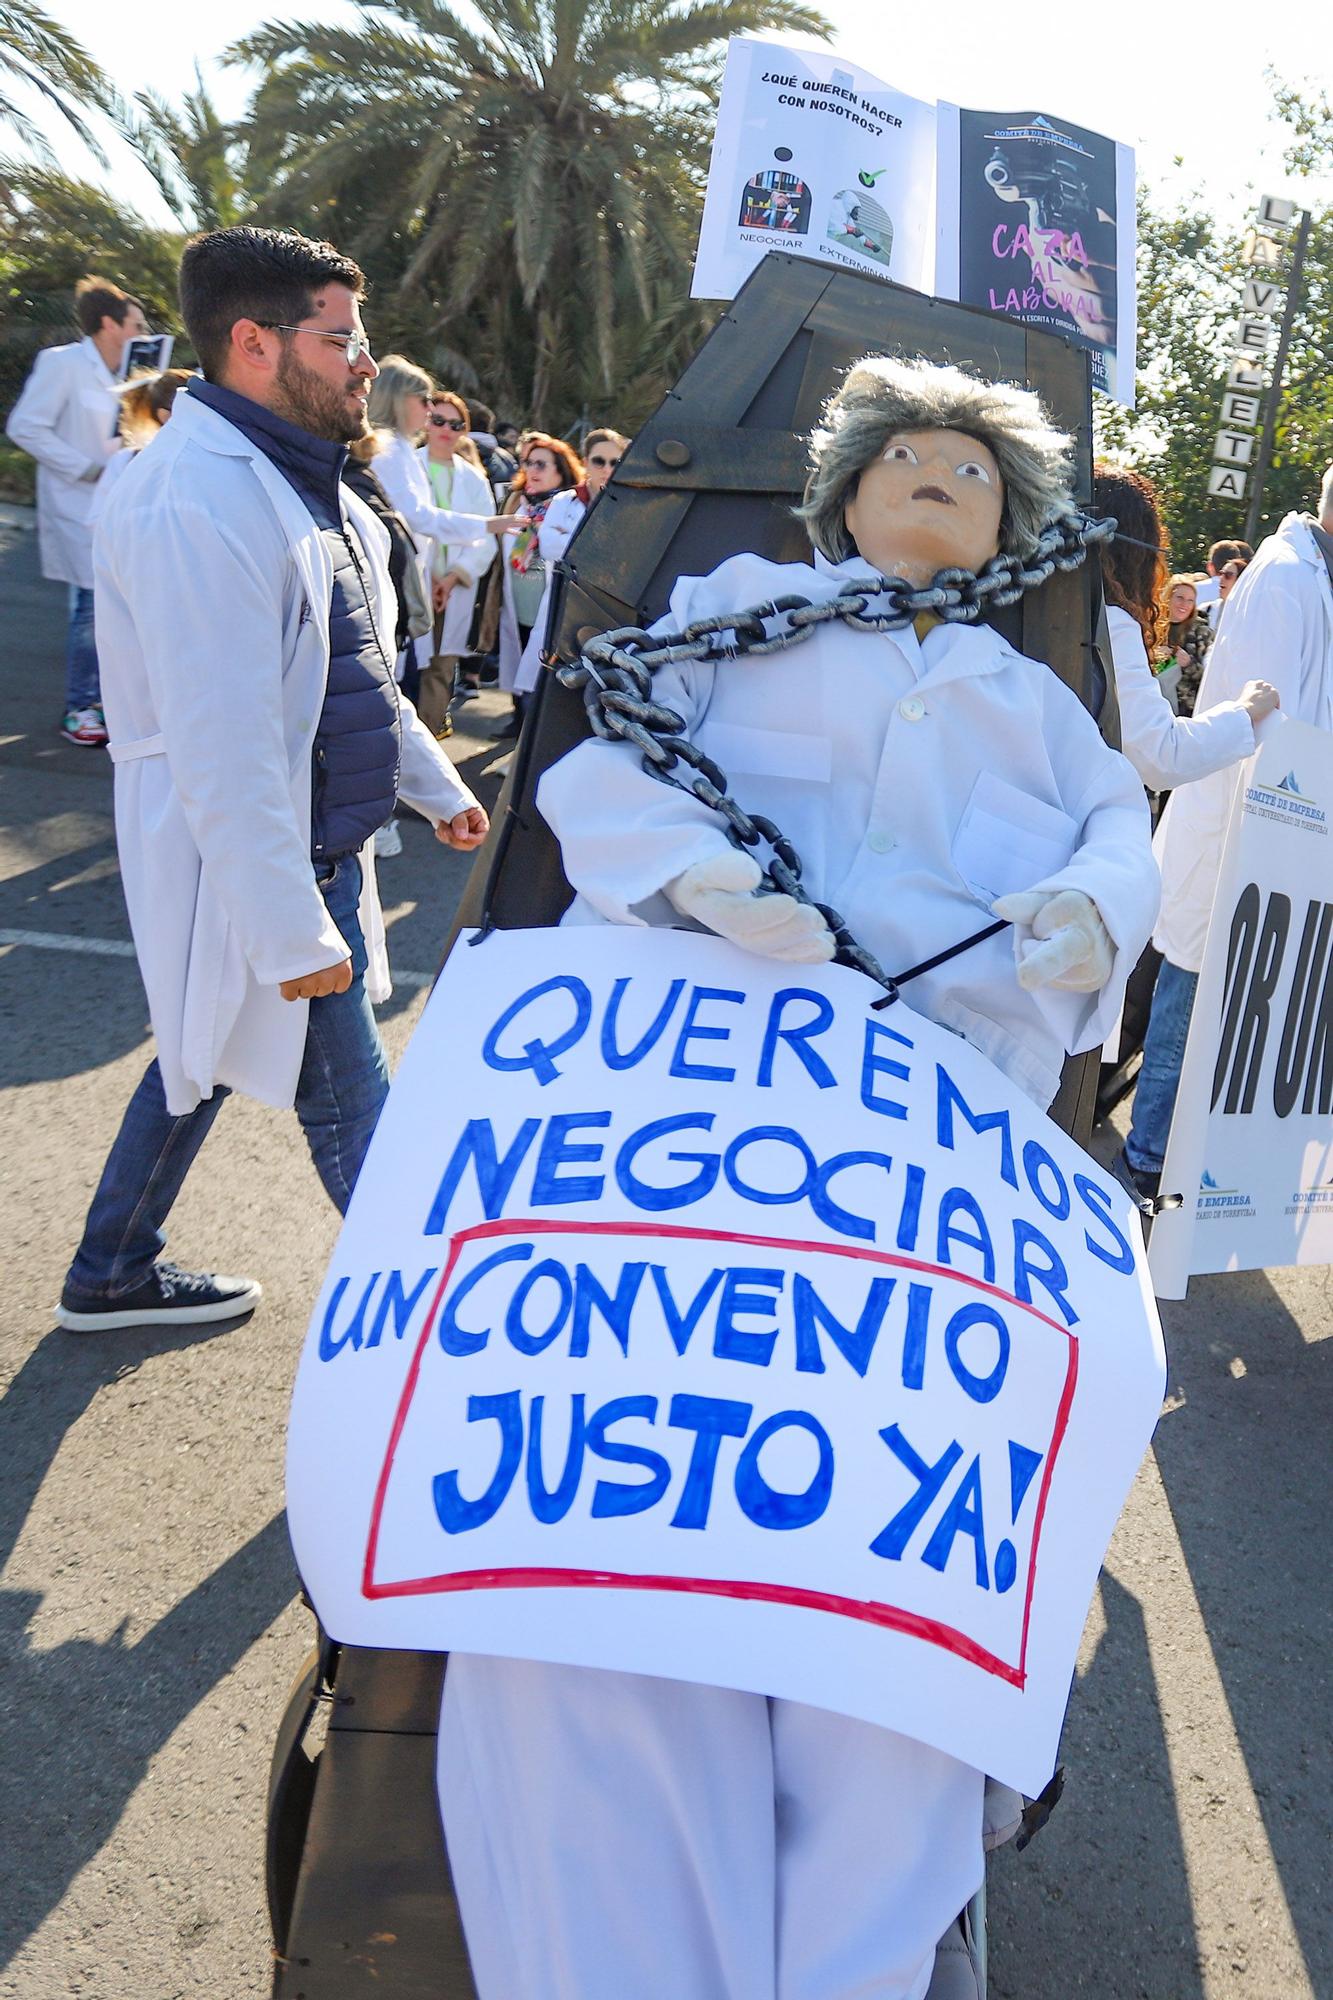 El personal laboral del área de Torrevieja sale a la calle contra Sanidad